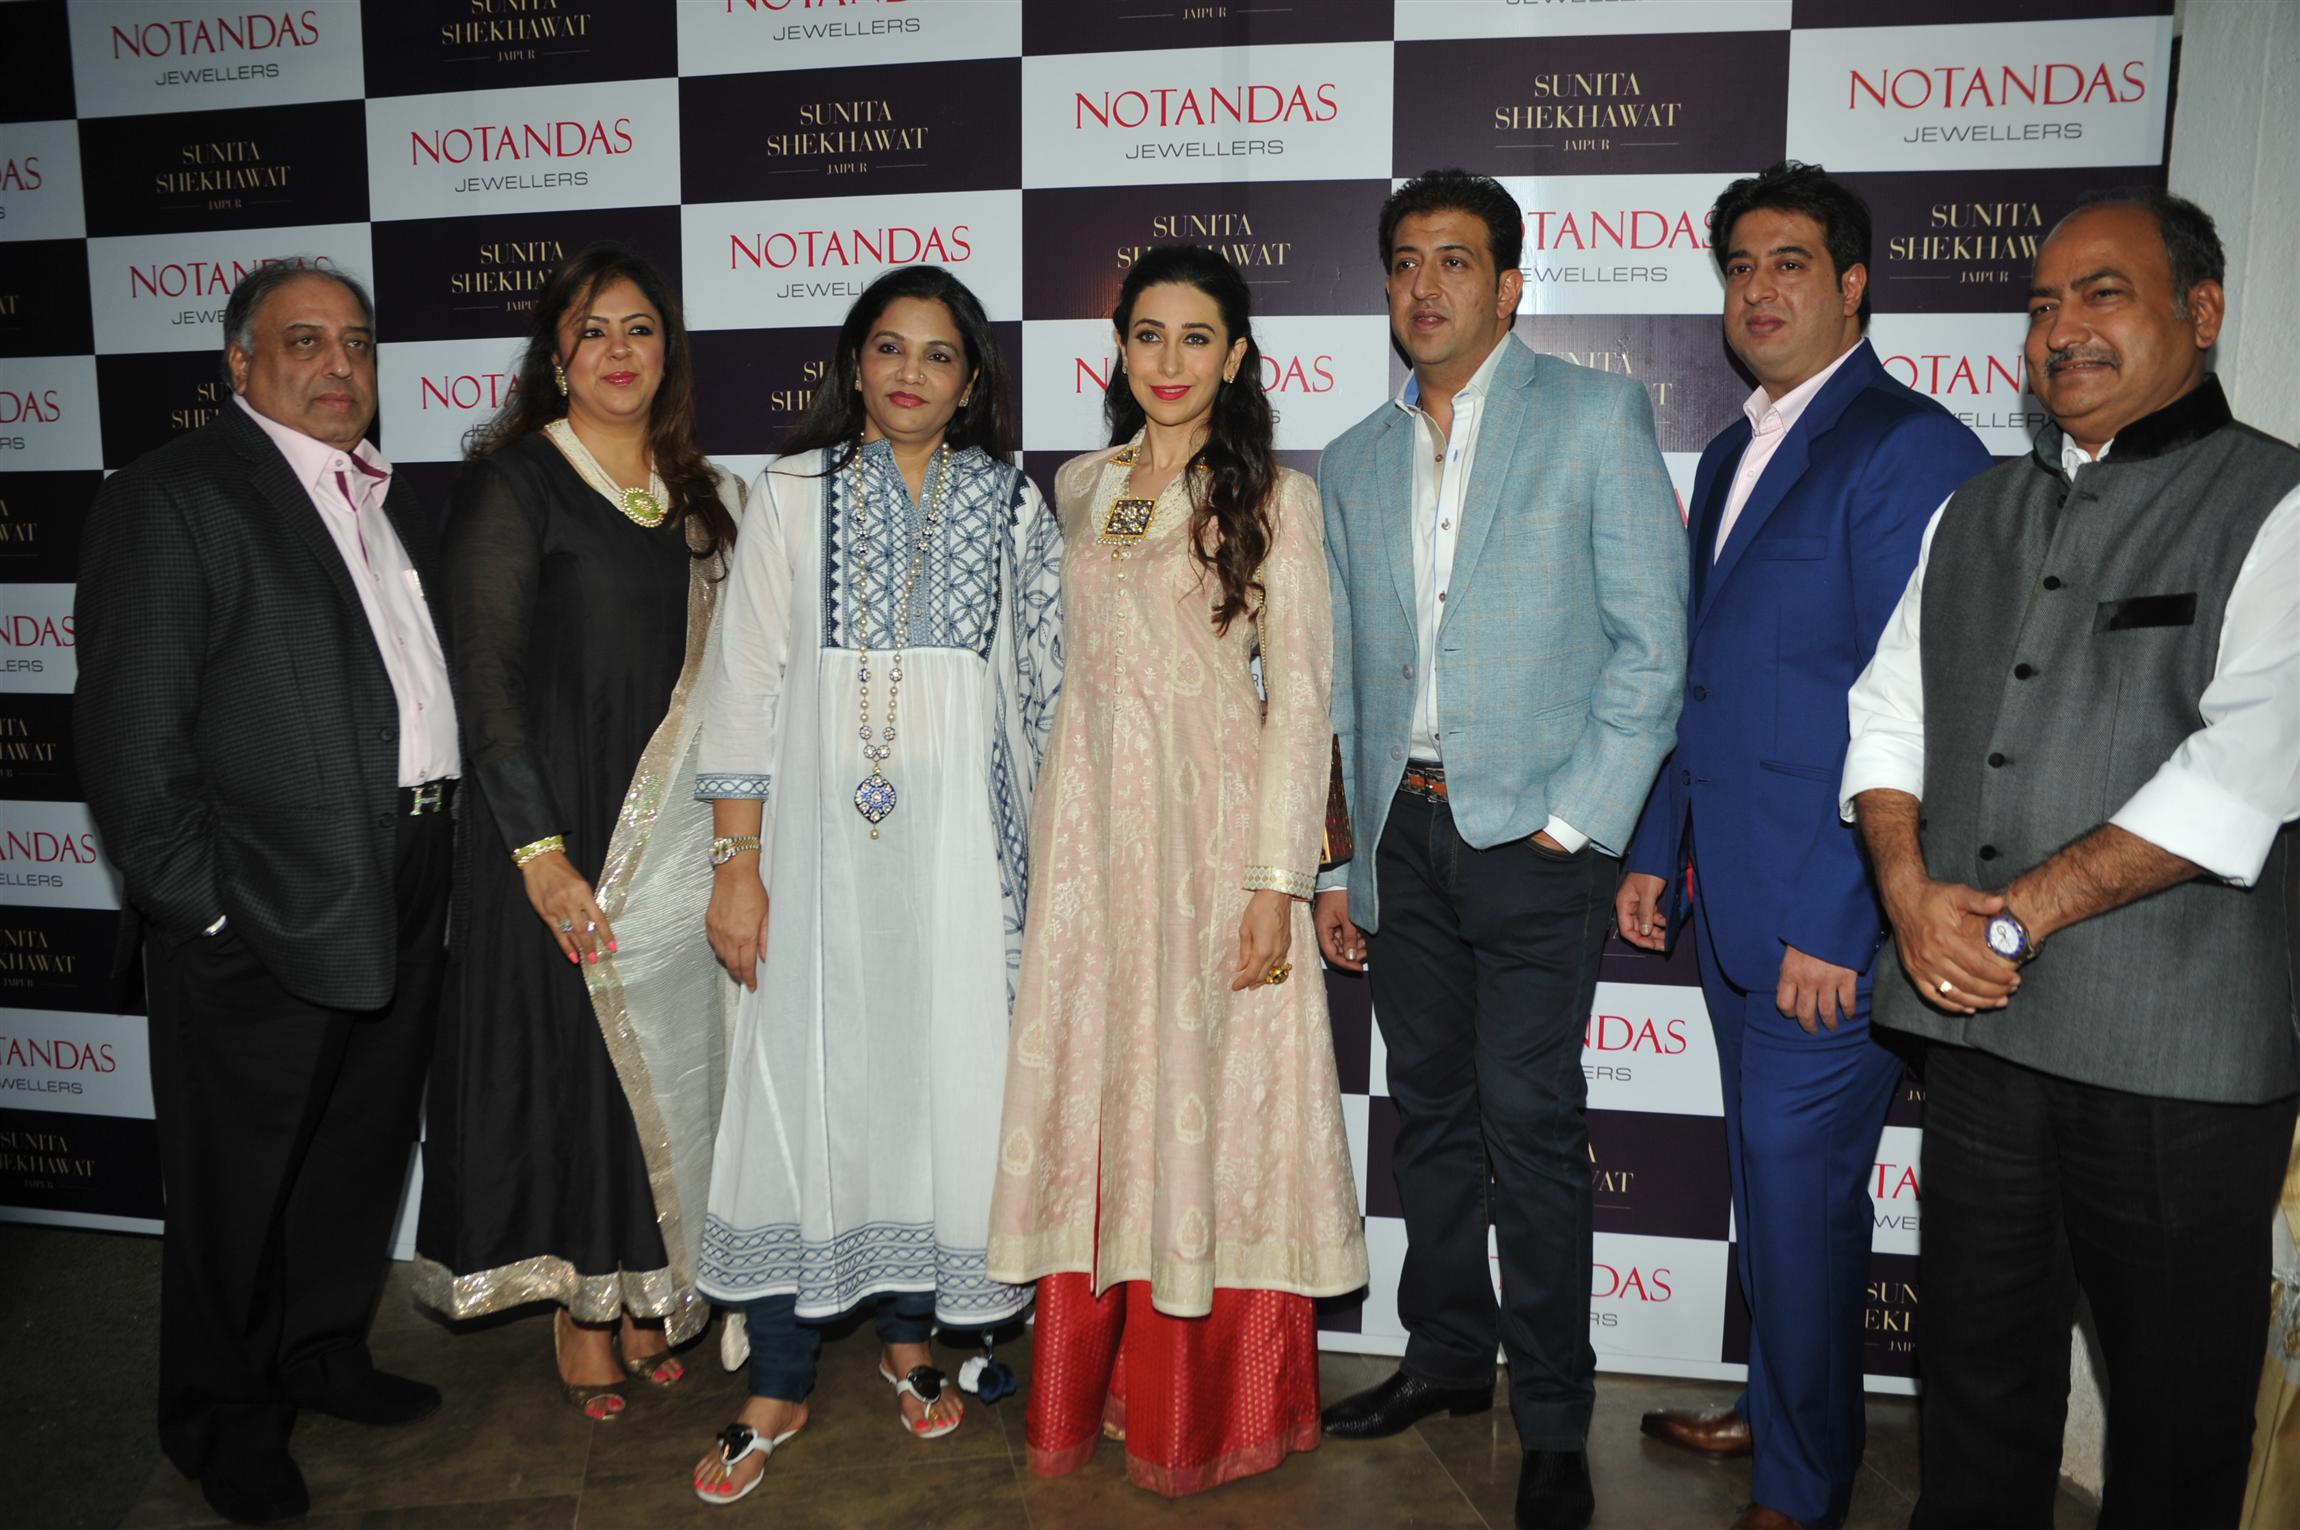 Karisma Kapoor Launch Sunita Shekhawat Jewellery